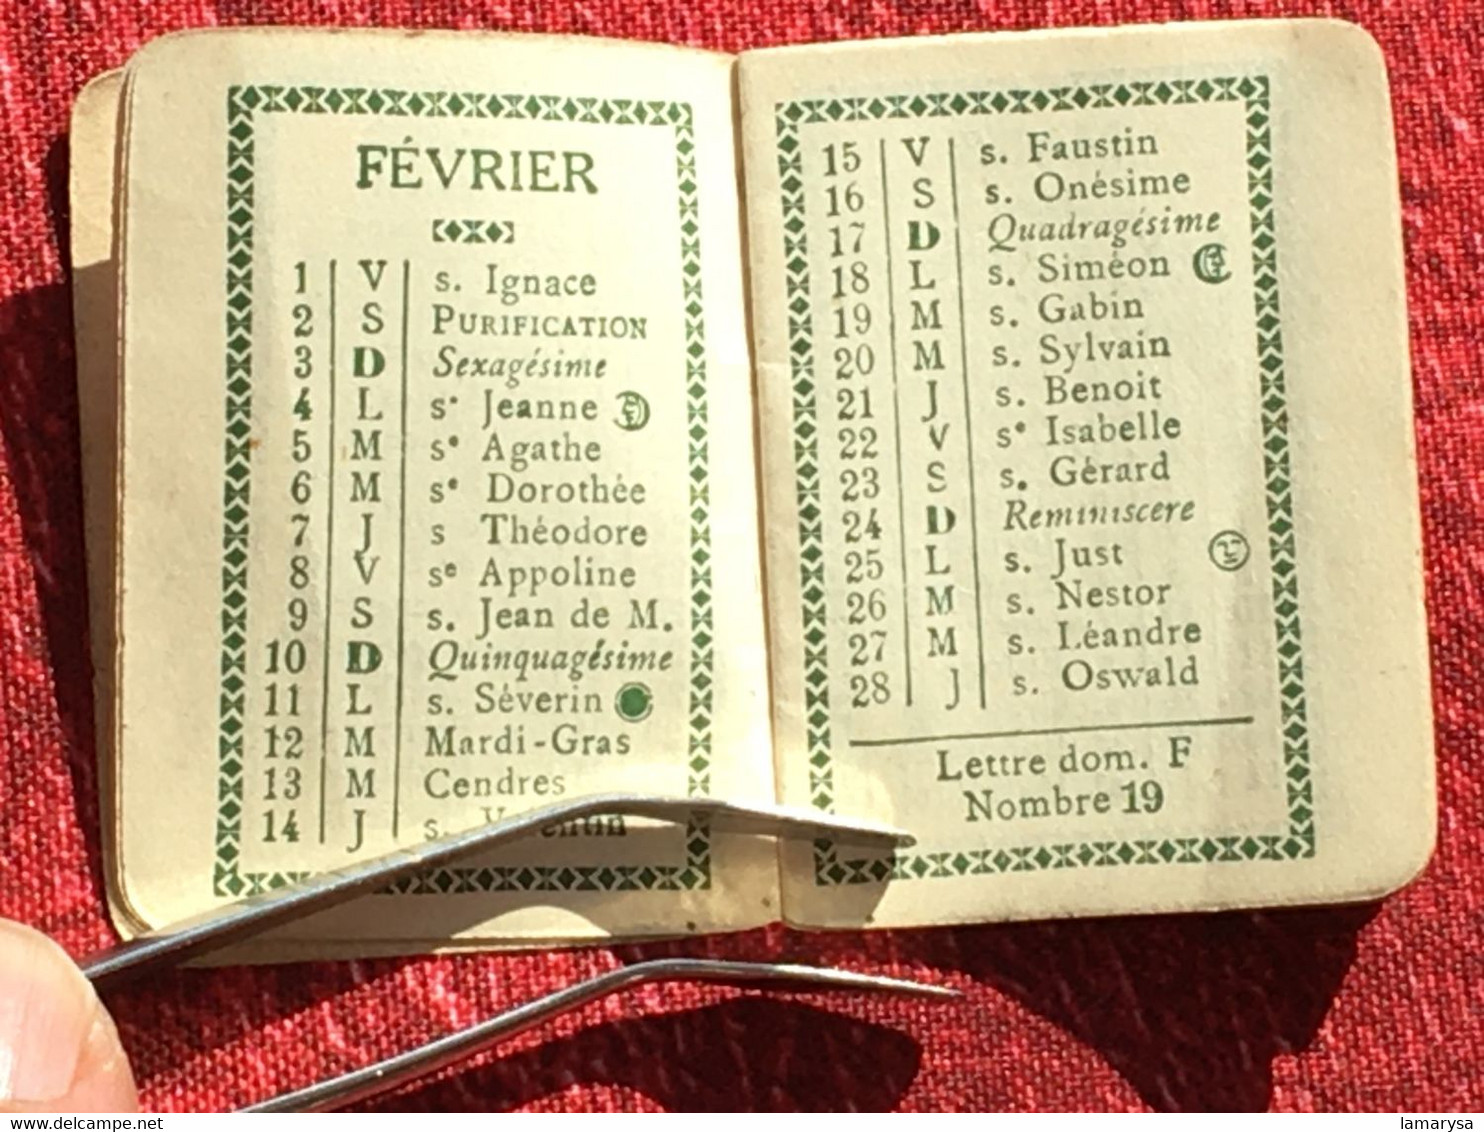 Almanach 1918 Calendrier-Petit format-Saisons-Fêtes-tarif postal-WW1-Publicitaire Coiffure-Chaussures Bernheim Paris